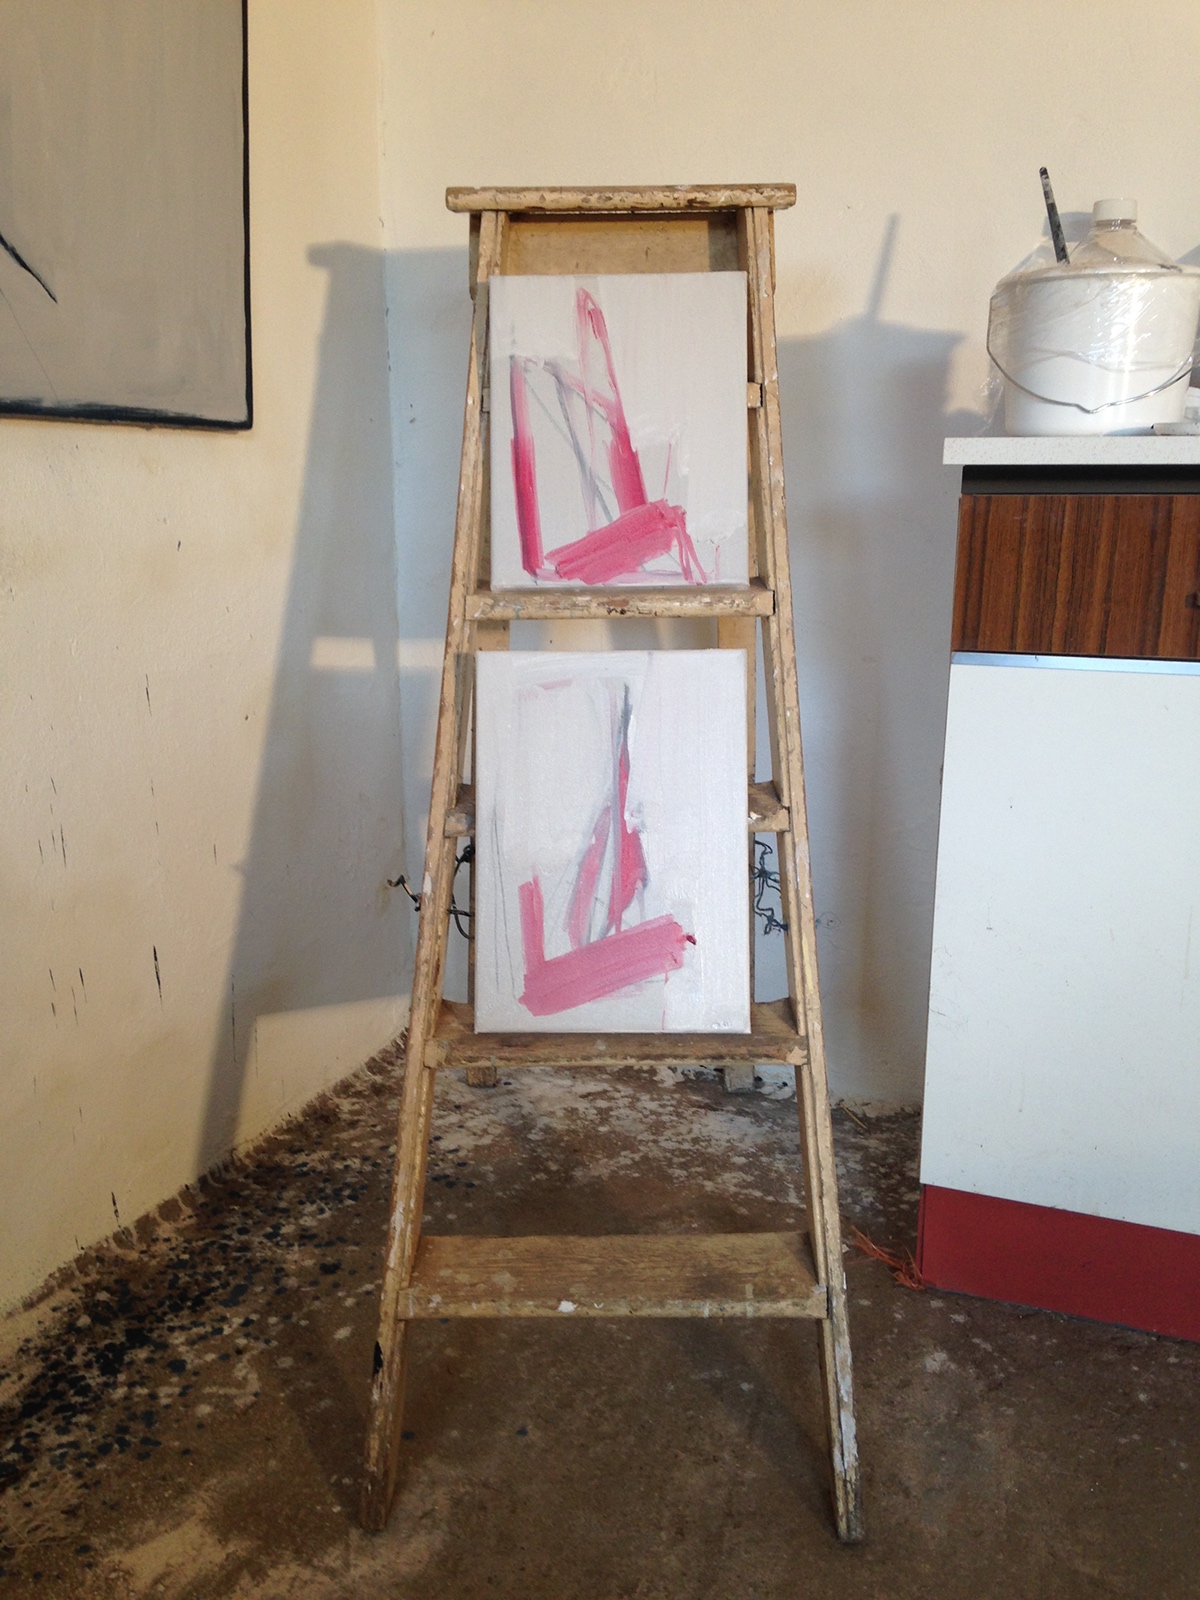 #FineArt   #studio #painting #London  #suffolk #Norwich #UK #drawing #MA #graduate